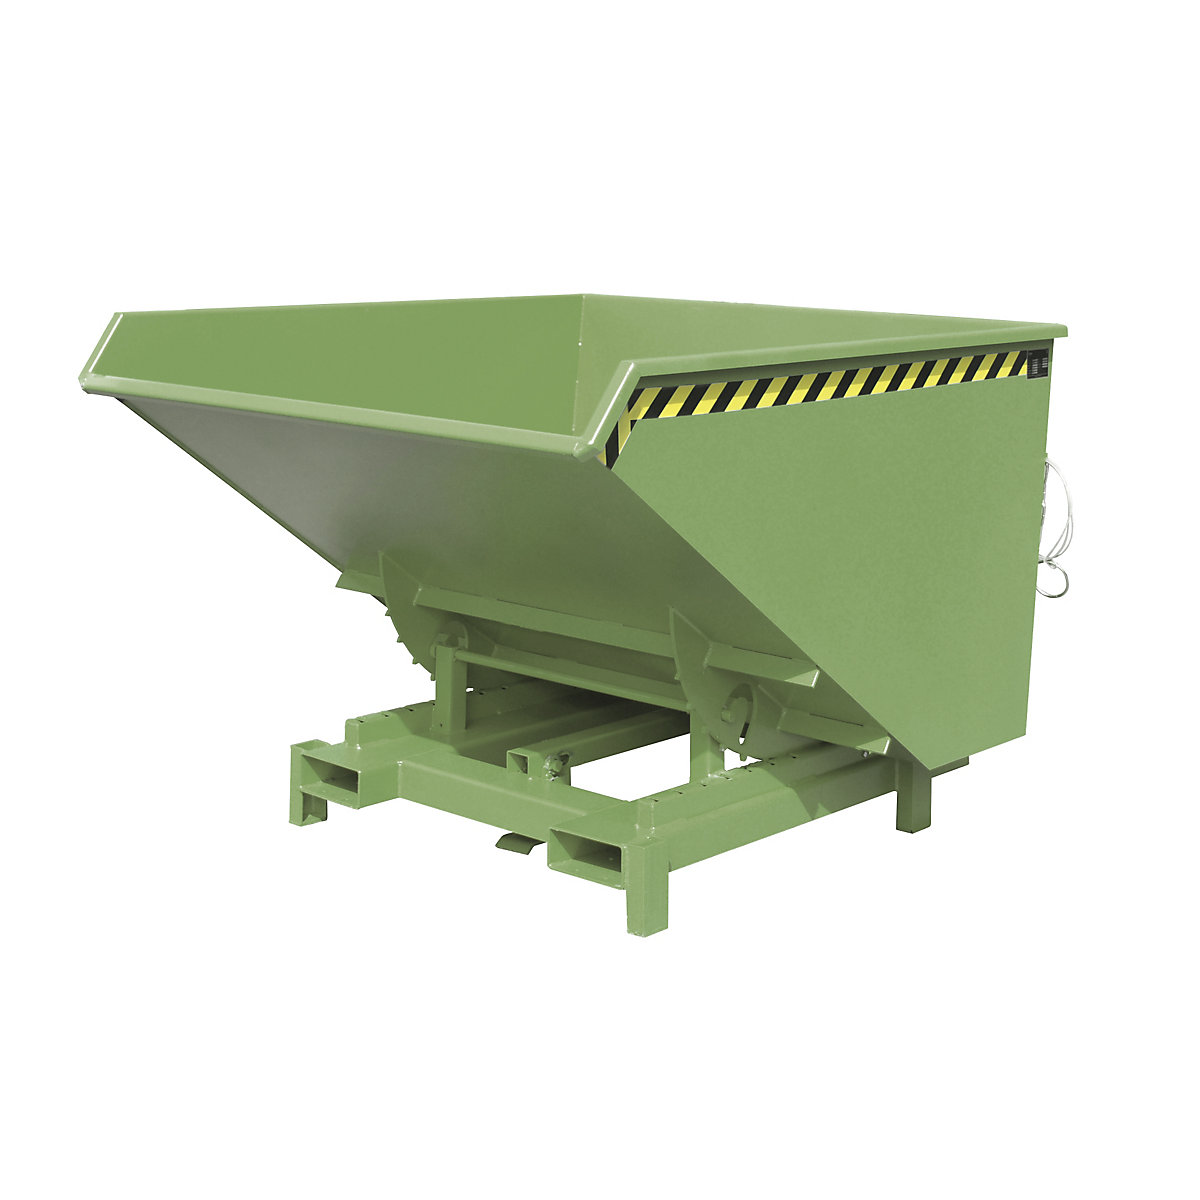 Recipient basculant pentru sarcini grele – eurokraft pro, volum 2,1 m³, capacitate portantă 4000 kg, verde RAL 6011-10